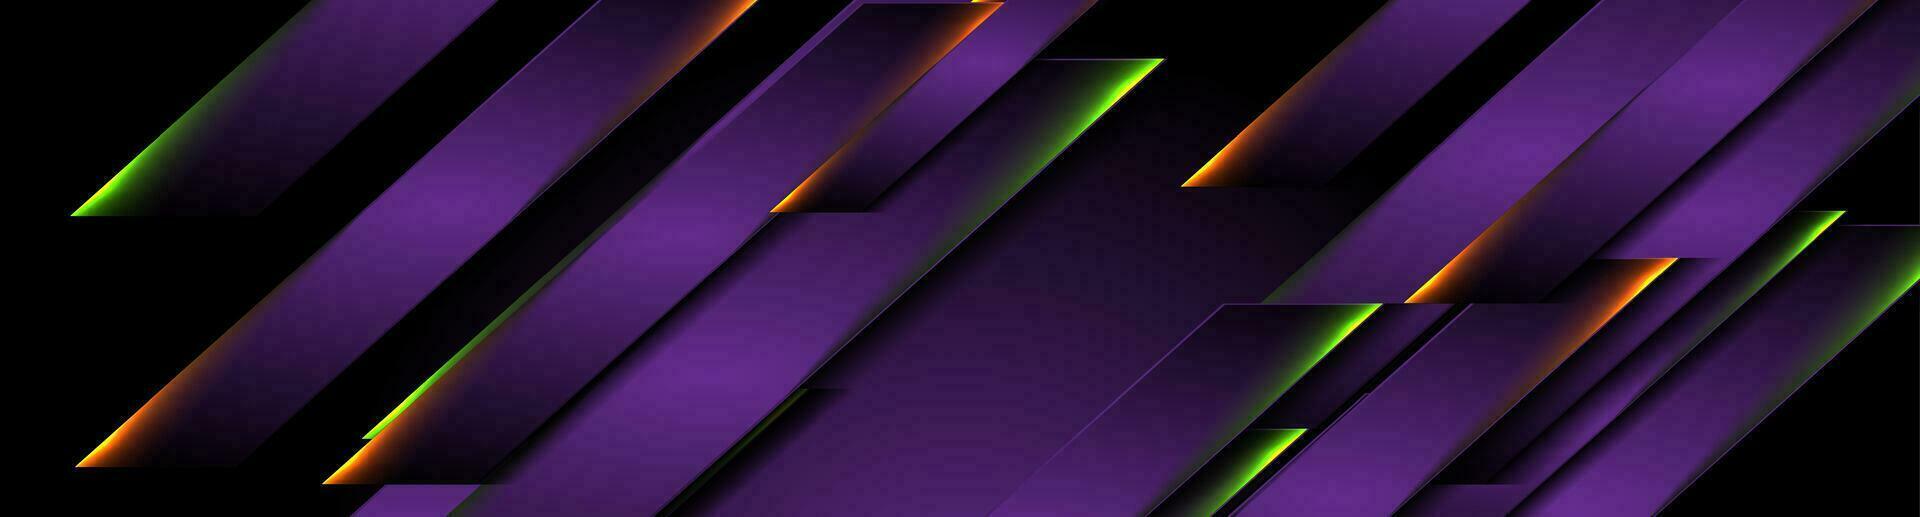 trogen mörk violett teknologi bakgrund med neon rader vektor